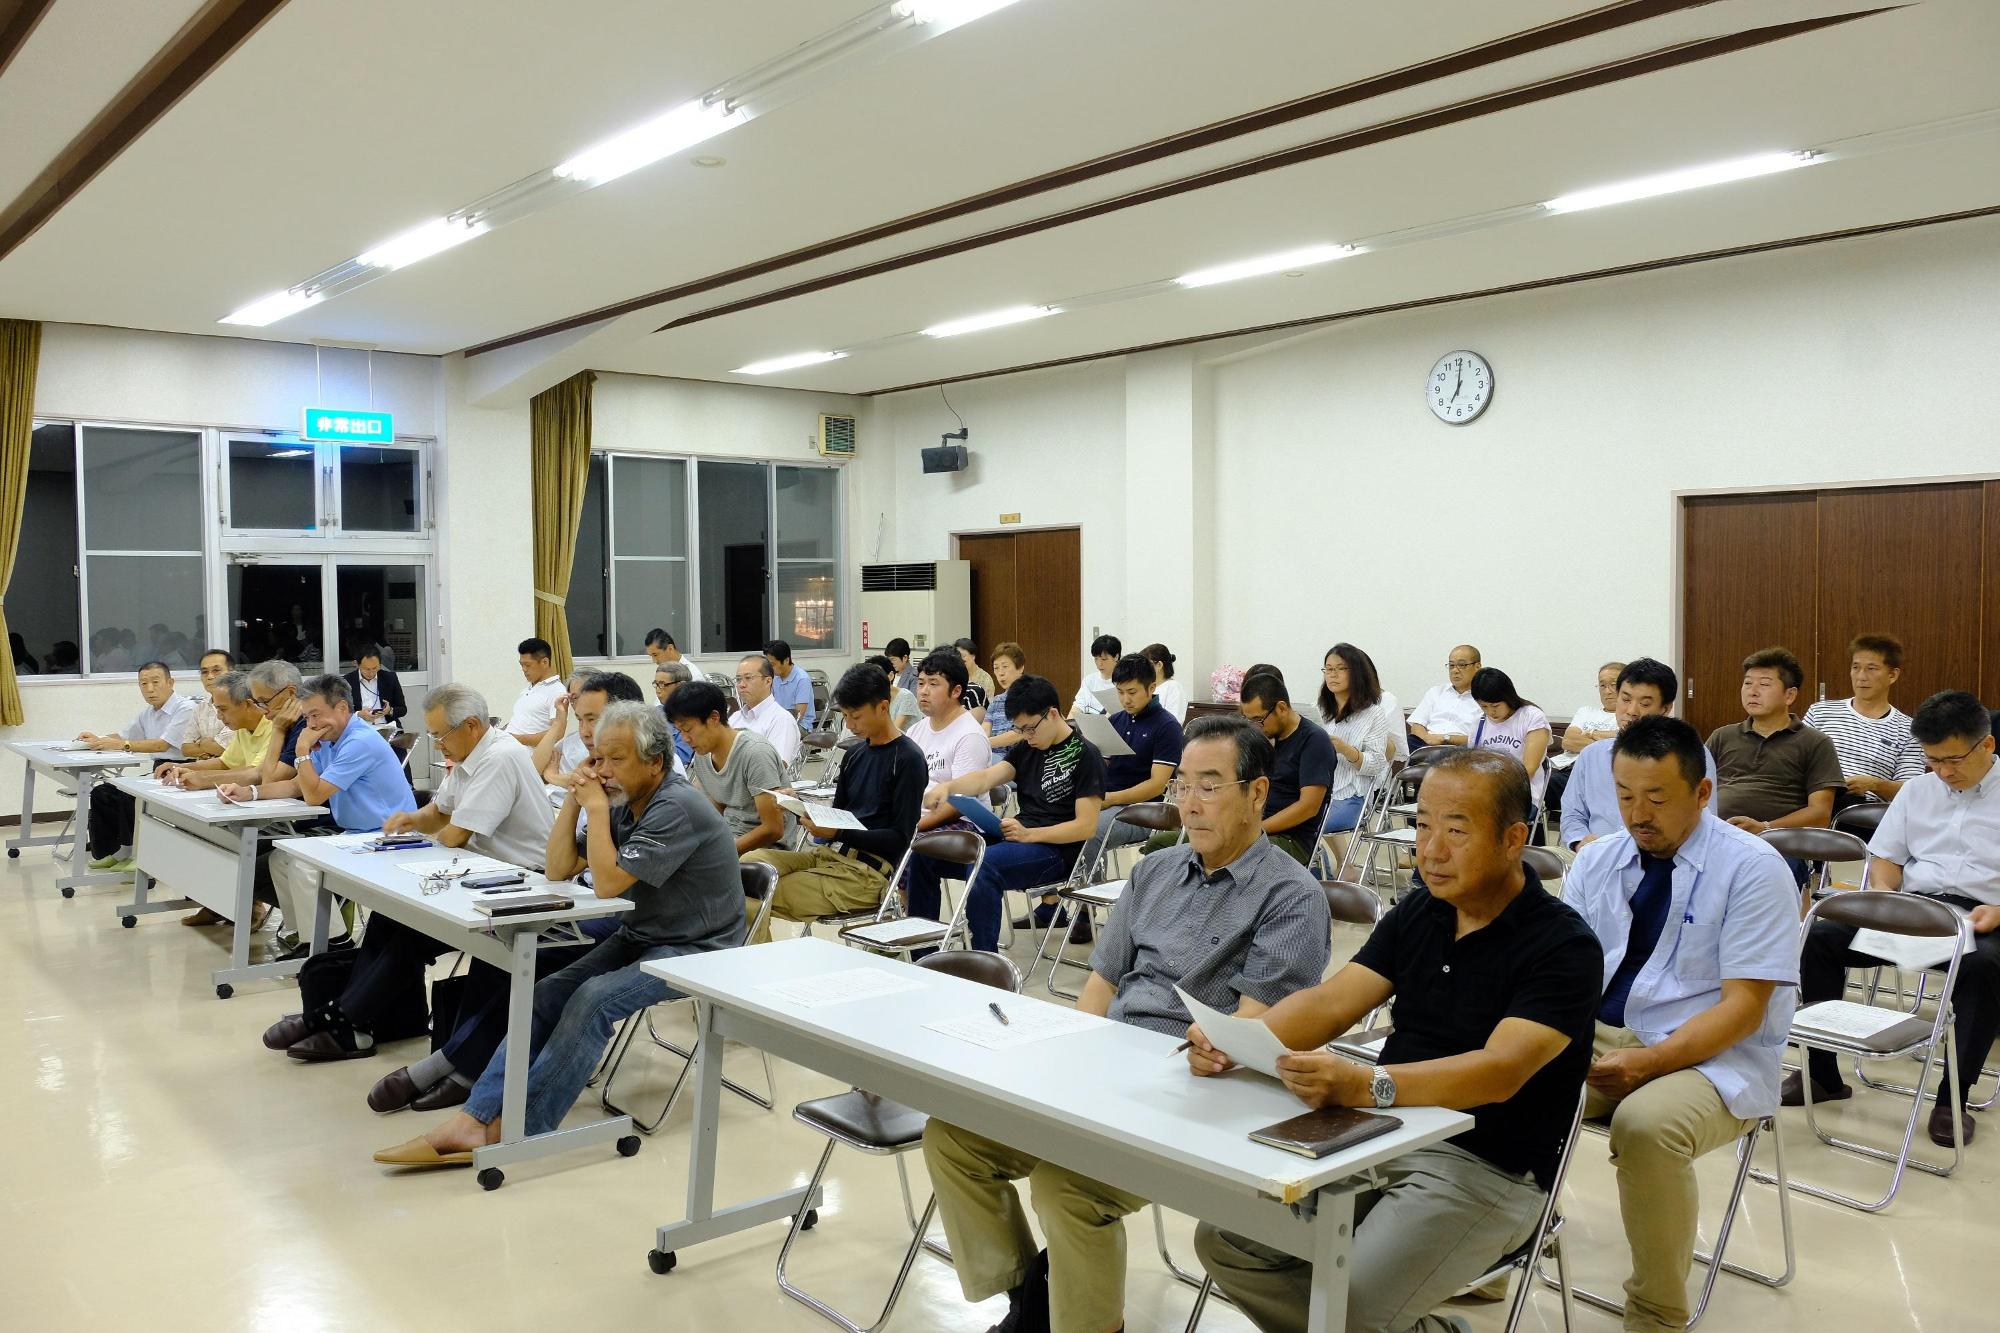 吉田区民会館で地域タウンミーティングをする参加者らの写真